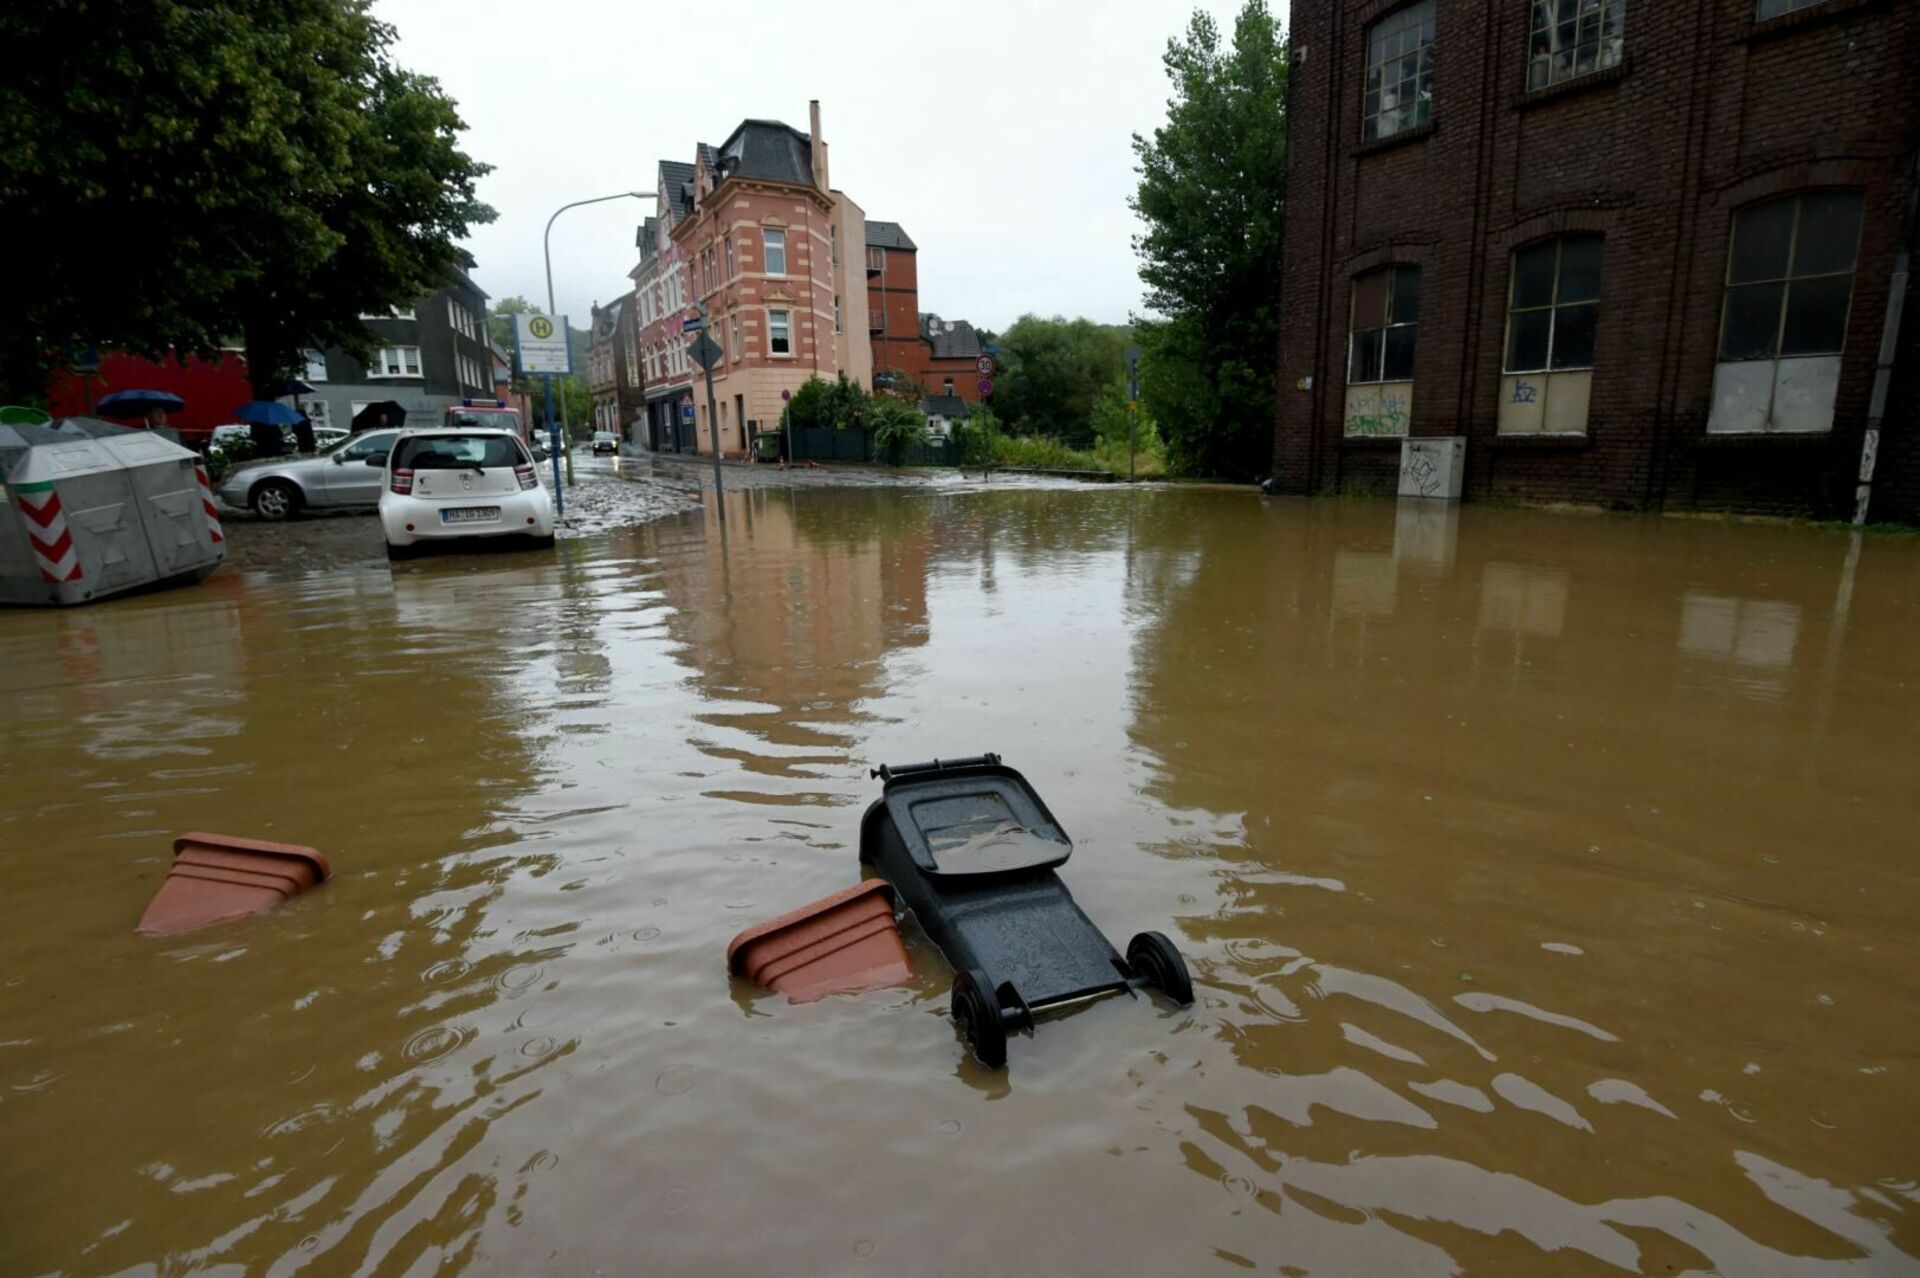 Flood happened. Наводнение в Германии 2021. Наводнения в Европе 2021 Германия. Наводнение в Германии 2002. Германия Саарбрюккен наводнение.